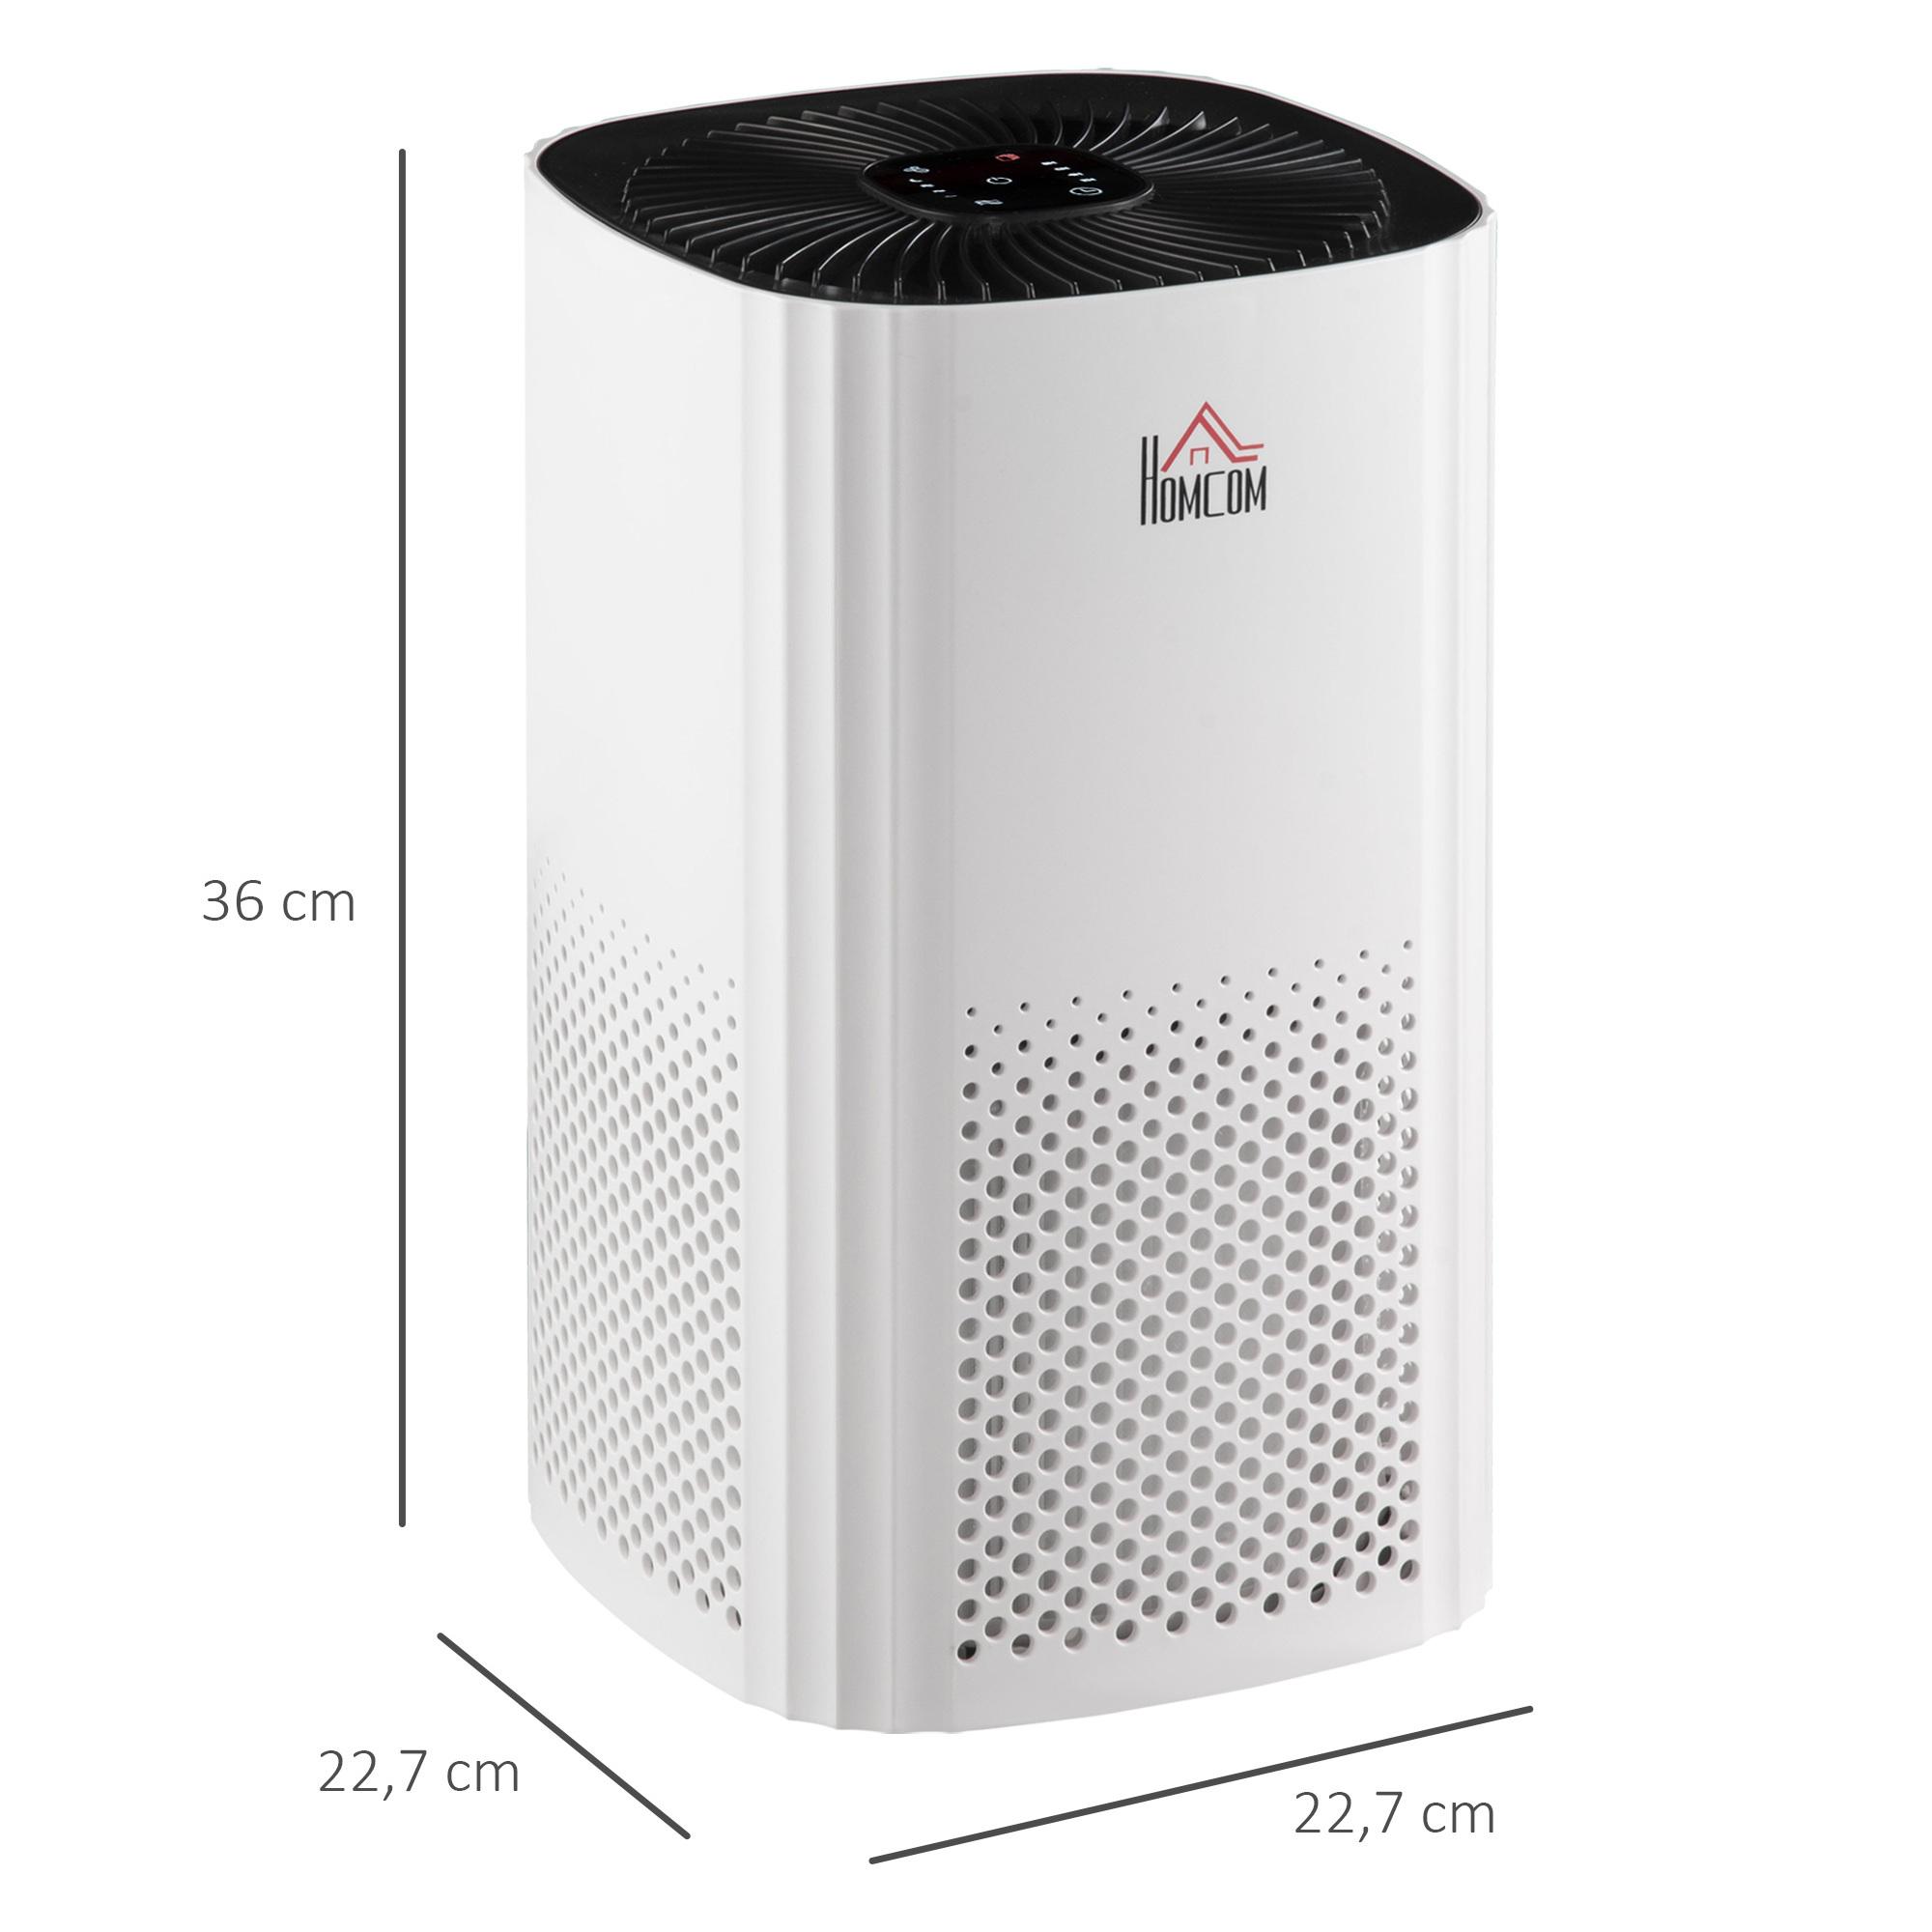 Purificateur d'air 25 W 4 vitesses mode silencieux - filtre HEPA, charbon actif - jusqu'à 24 m² - débit d'air pur 225 m³/h - timer - ABS blanc noir